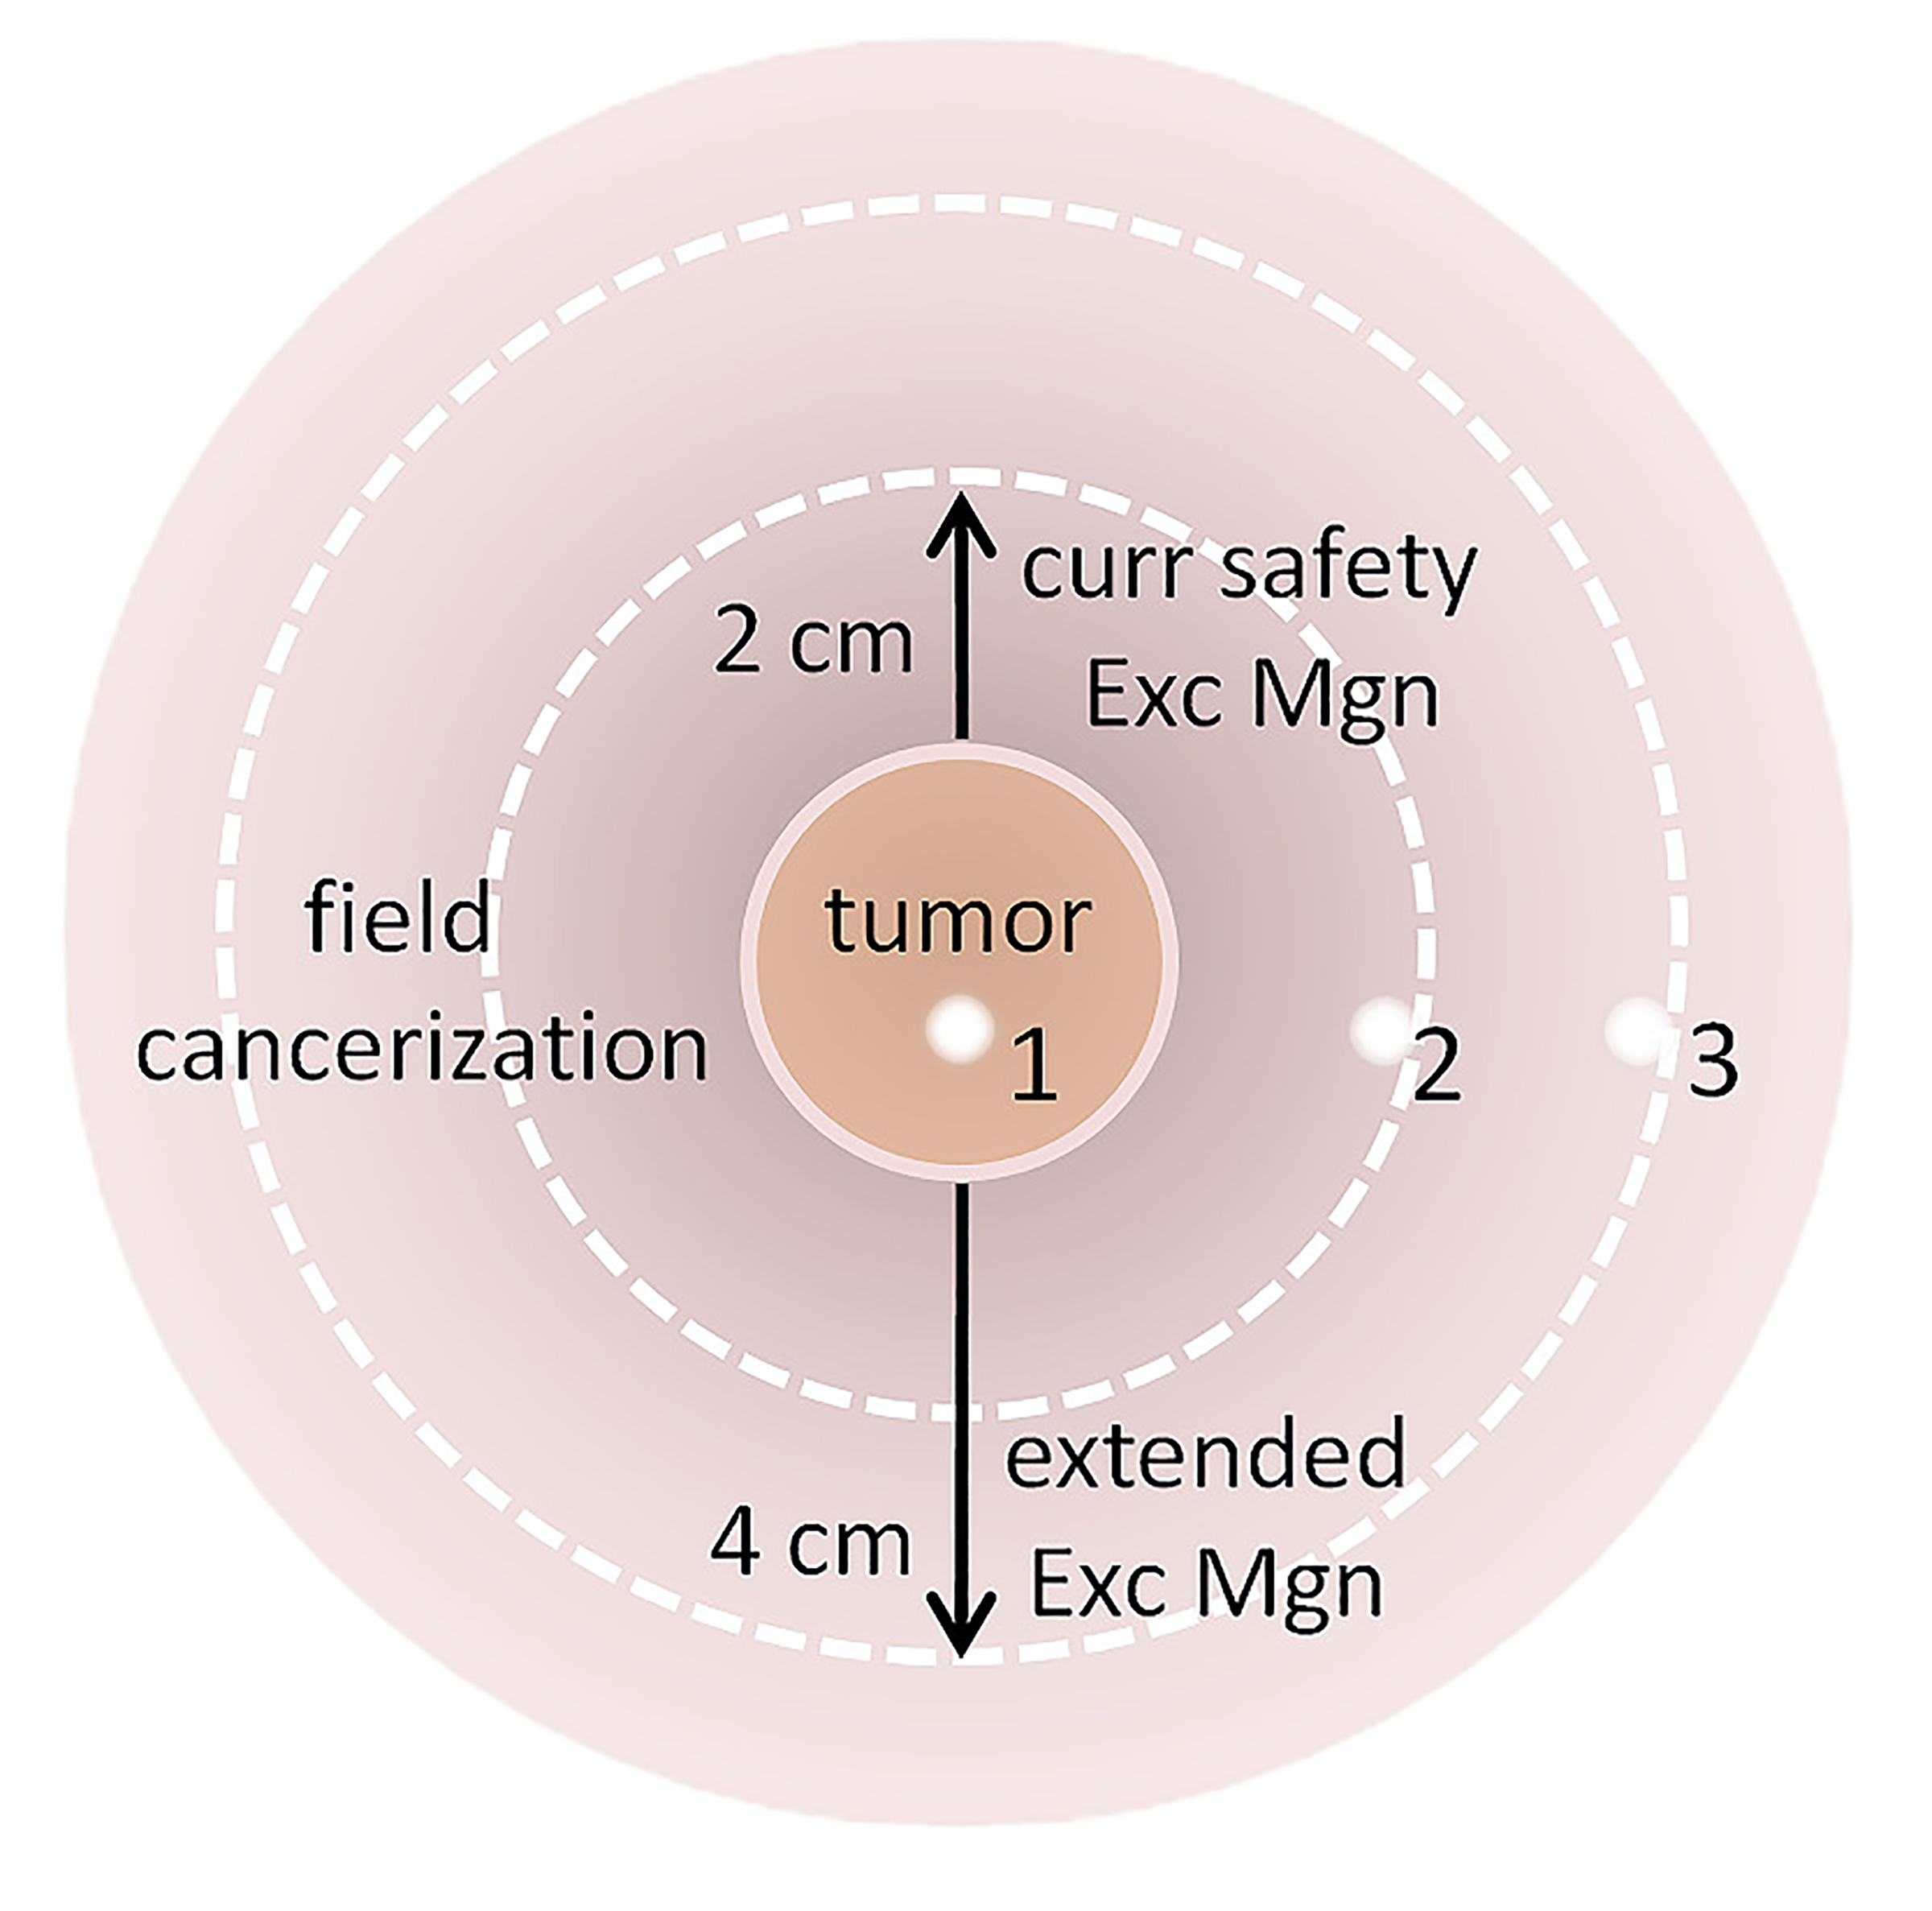 iFISH肿瘤组织与液体活检精准定位区域性癌变手术切缘及有效检测细胞型MRD